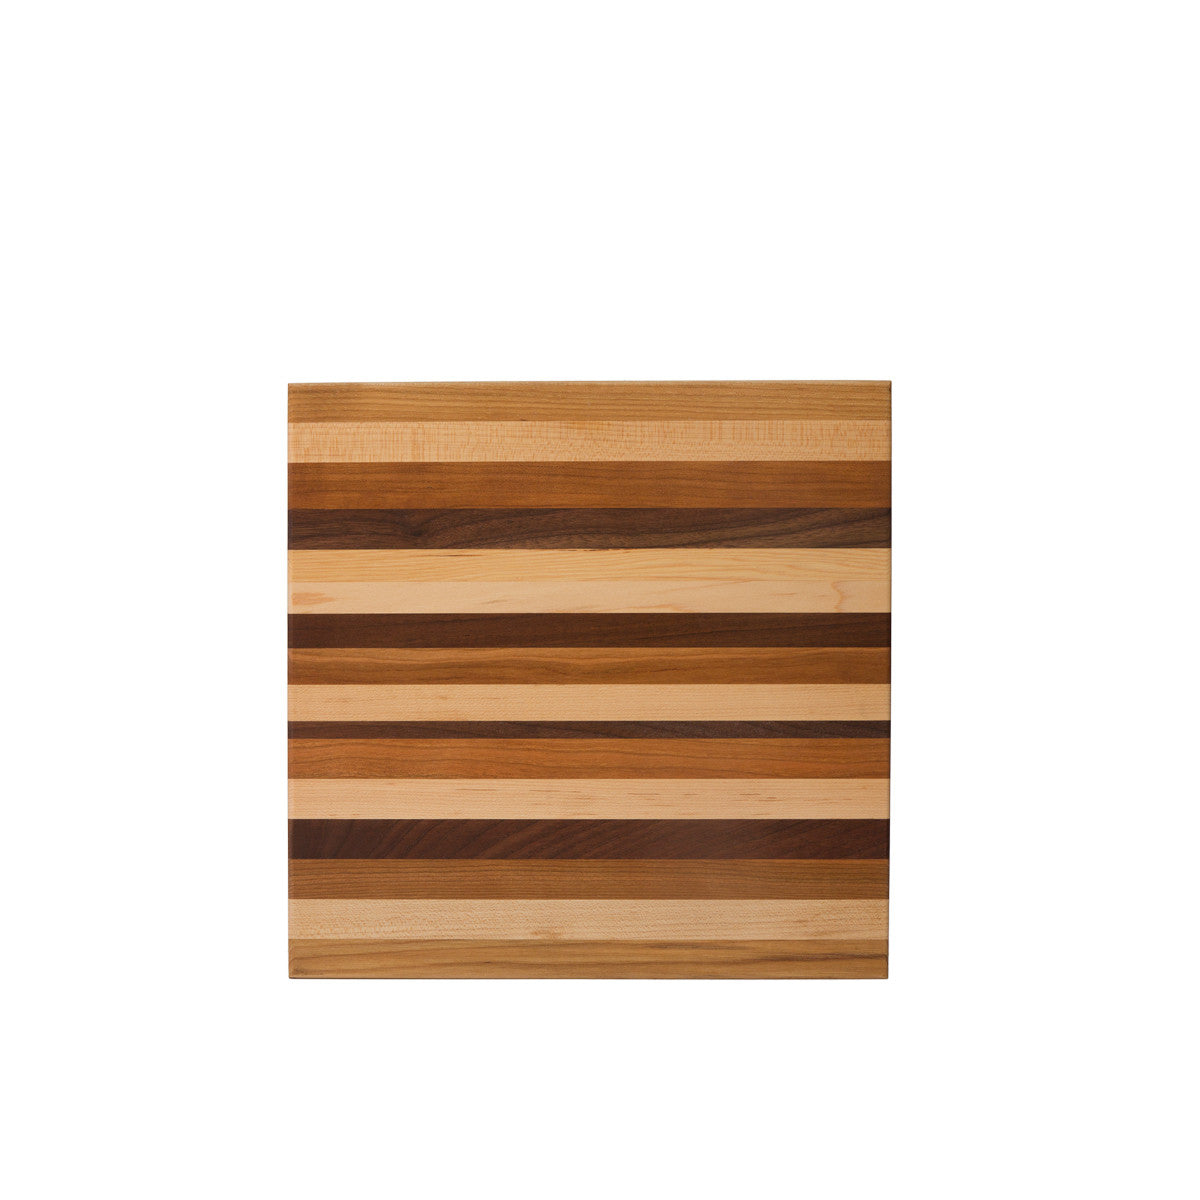 New: Hardwood Cutting Board - Medium 18 x 12 x 1 Made in USA